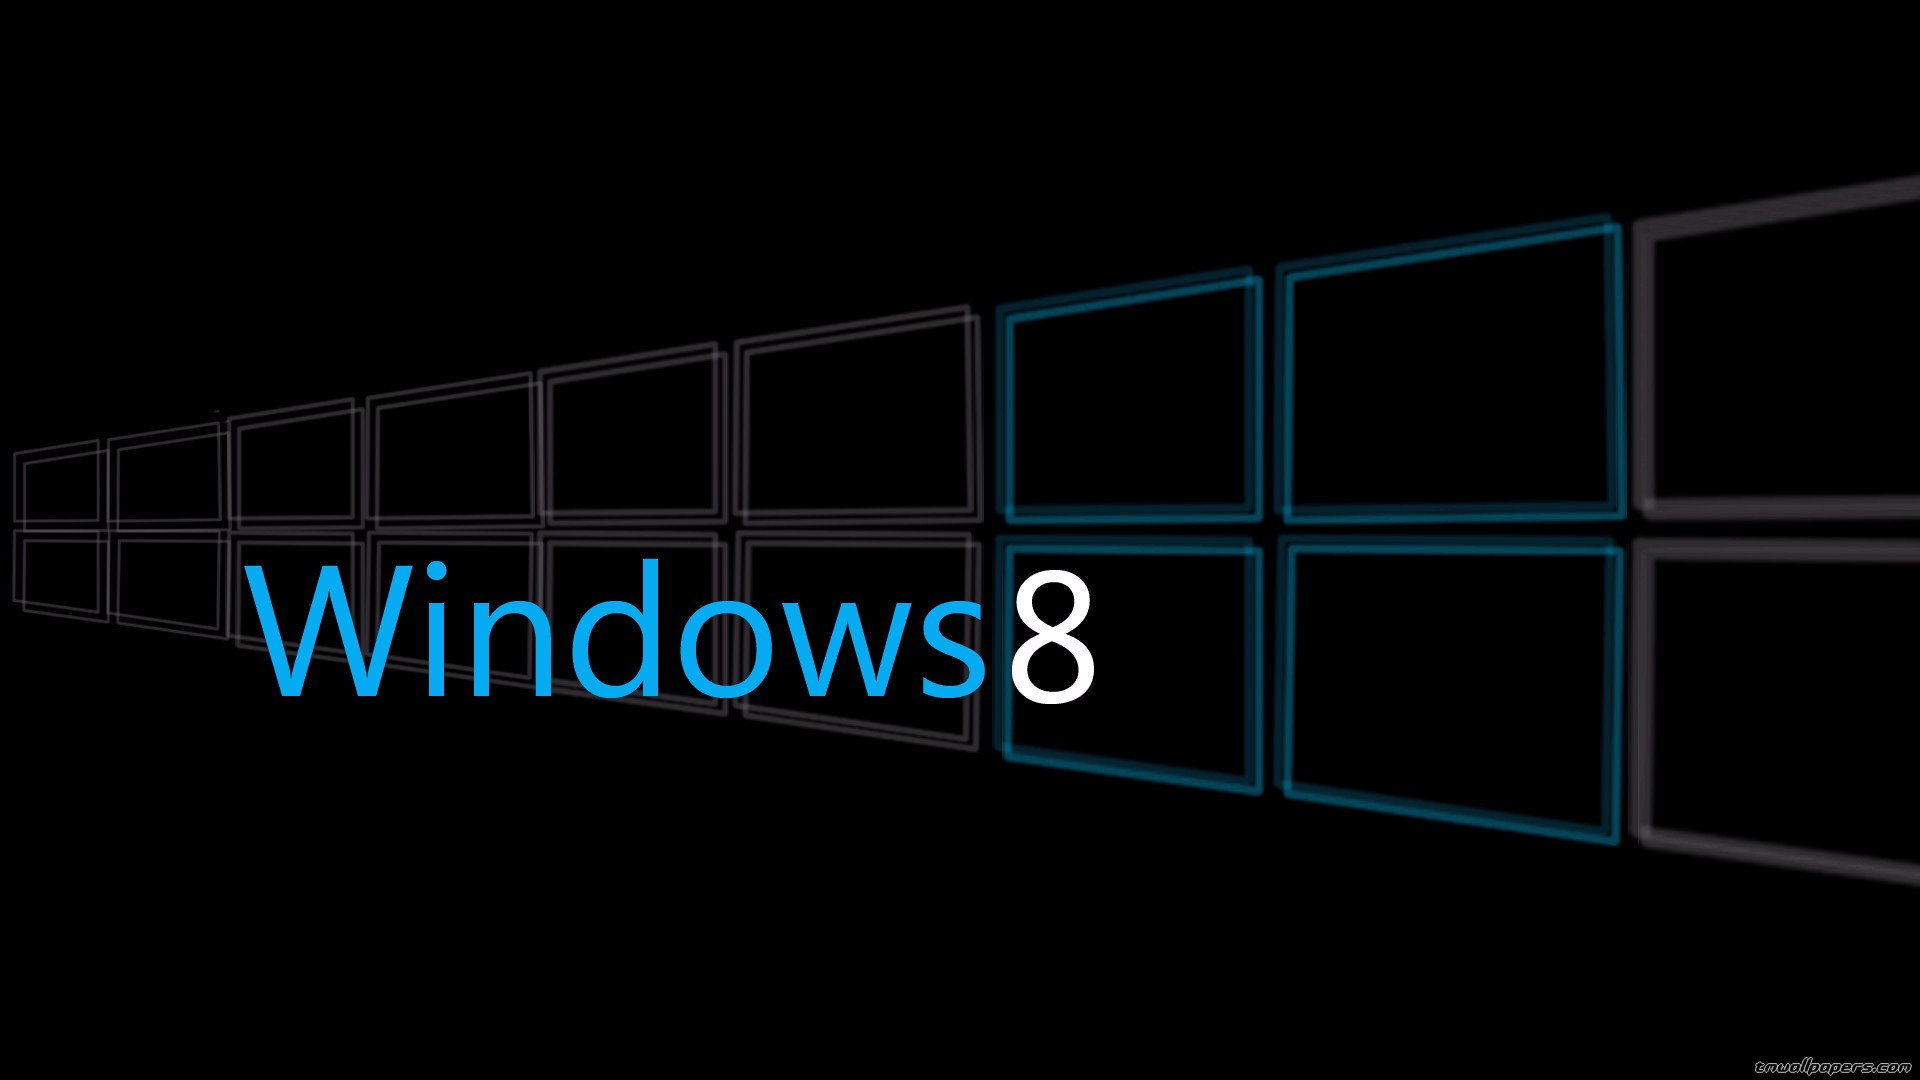 Hình nền Windows 8.1 là một lựa chọn tuyệt vời để cá nhân hóa máy tính của bạn. Với các biến thể khác nhau, từ các hình nền đơn giản đến những hình ảnh hấp dẫn và sống động, bạn sẽ chắc chắn tìm được hình nền hoàn hảo cho mình.